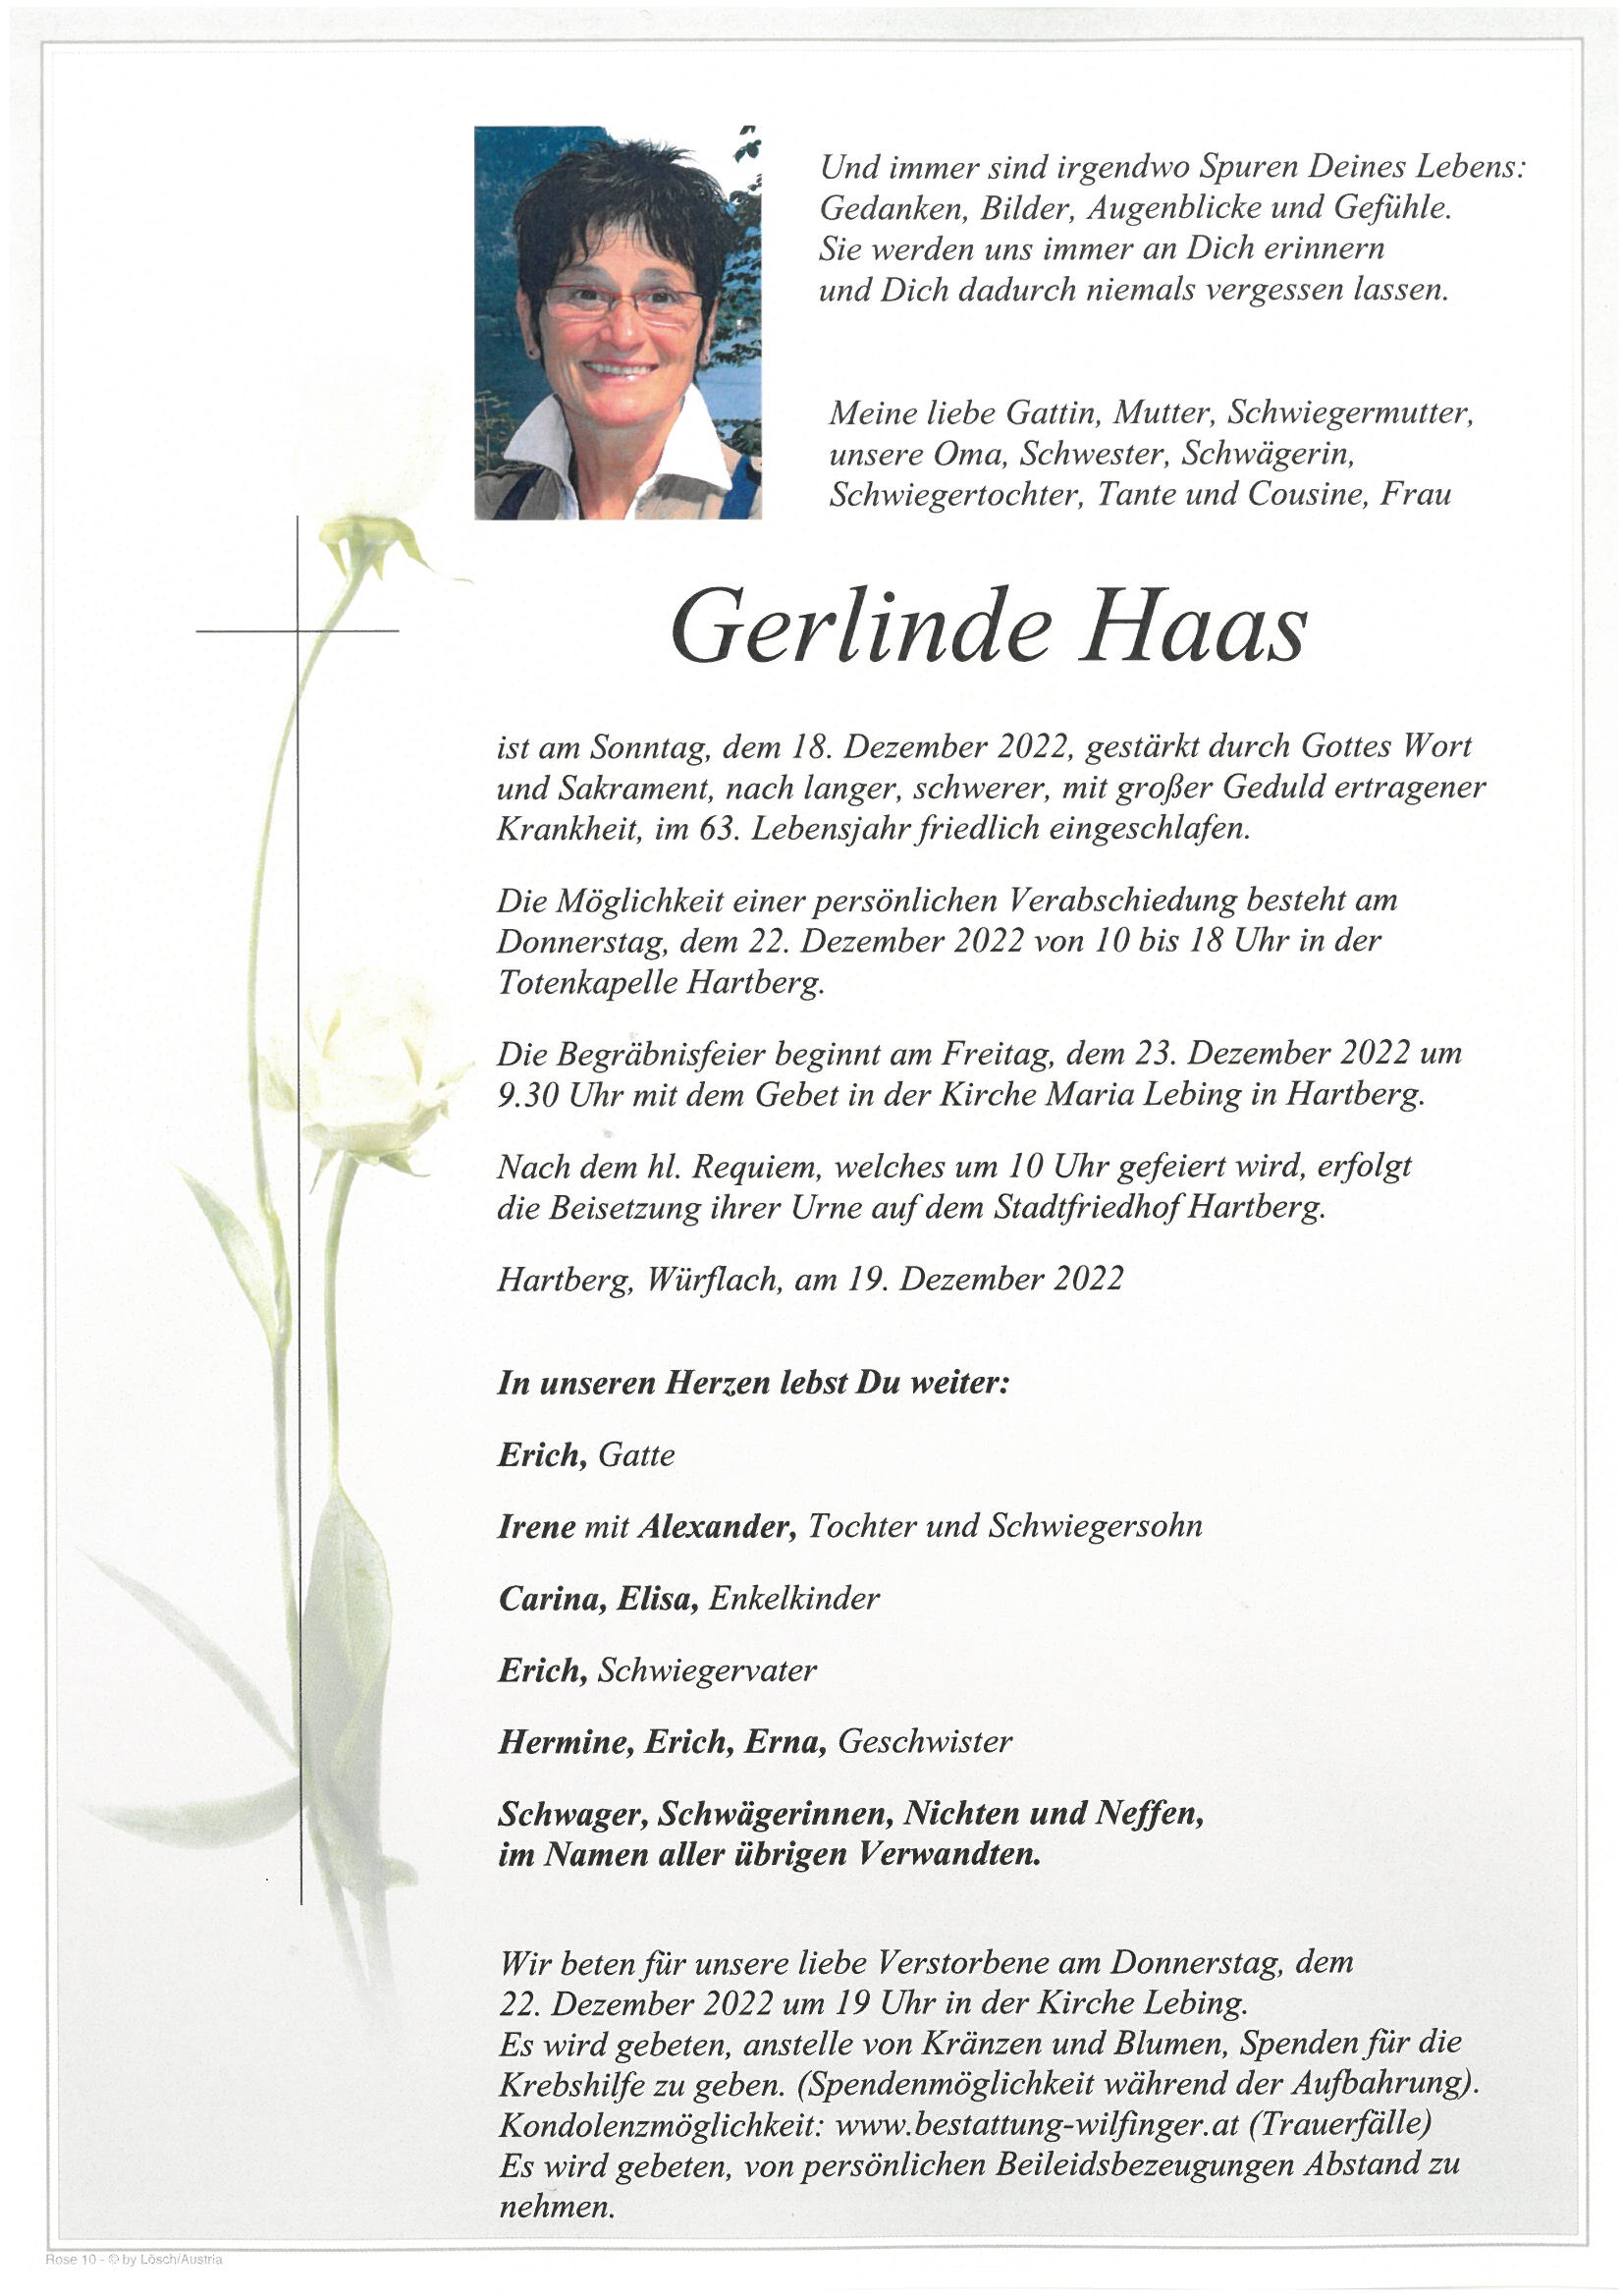 Gerlinde Haas, Hartberg